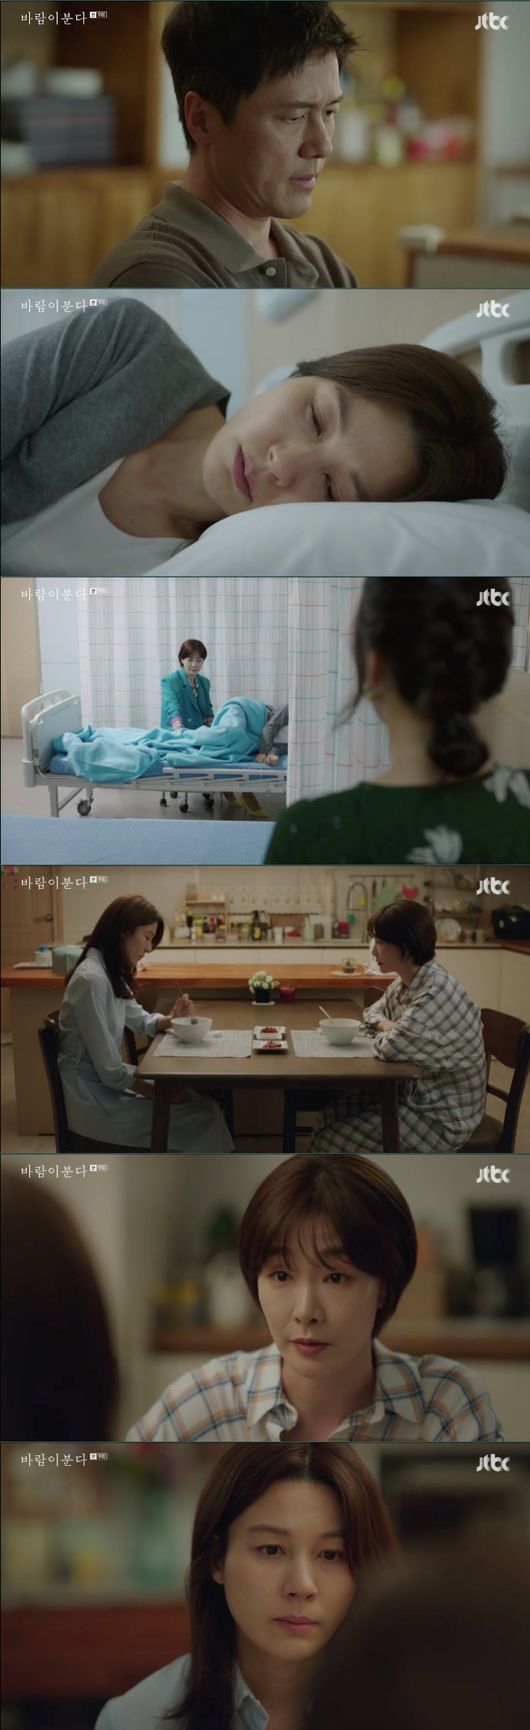 [사진=JTBC 방송화면] '바람이 분다' 9회 감우성, 김하늘, 박효주 등